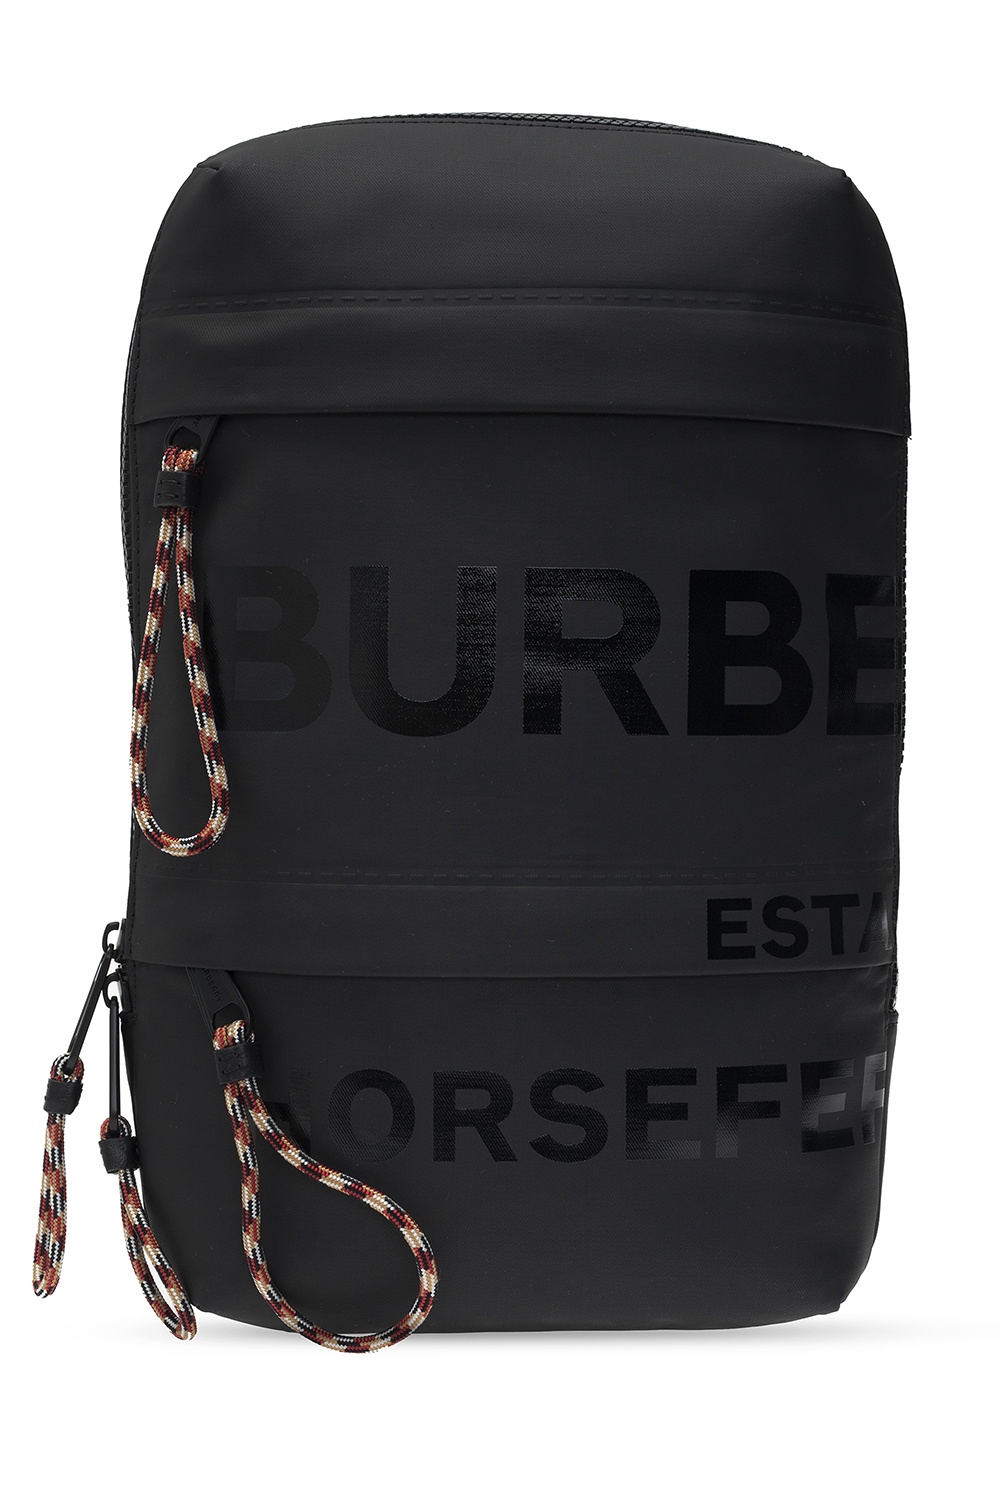 Burberry One-shoulder backpack